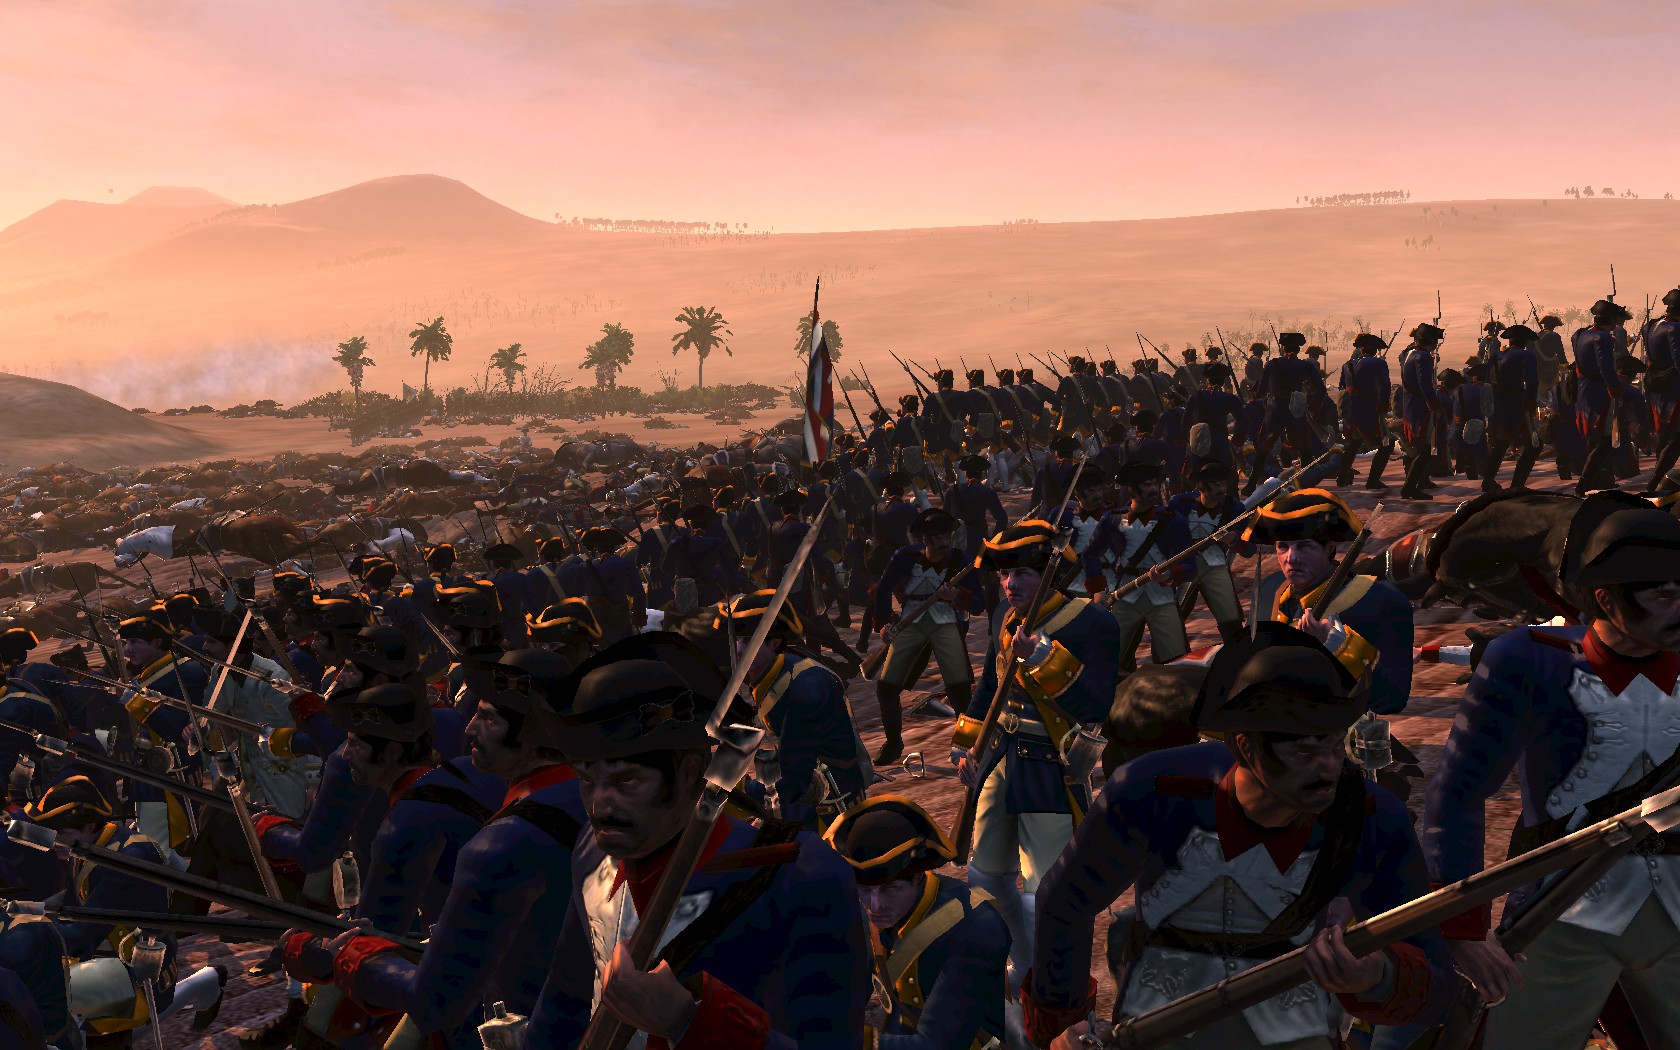 Empire Total War II